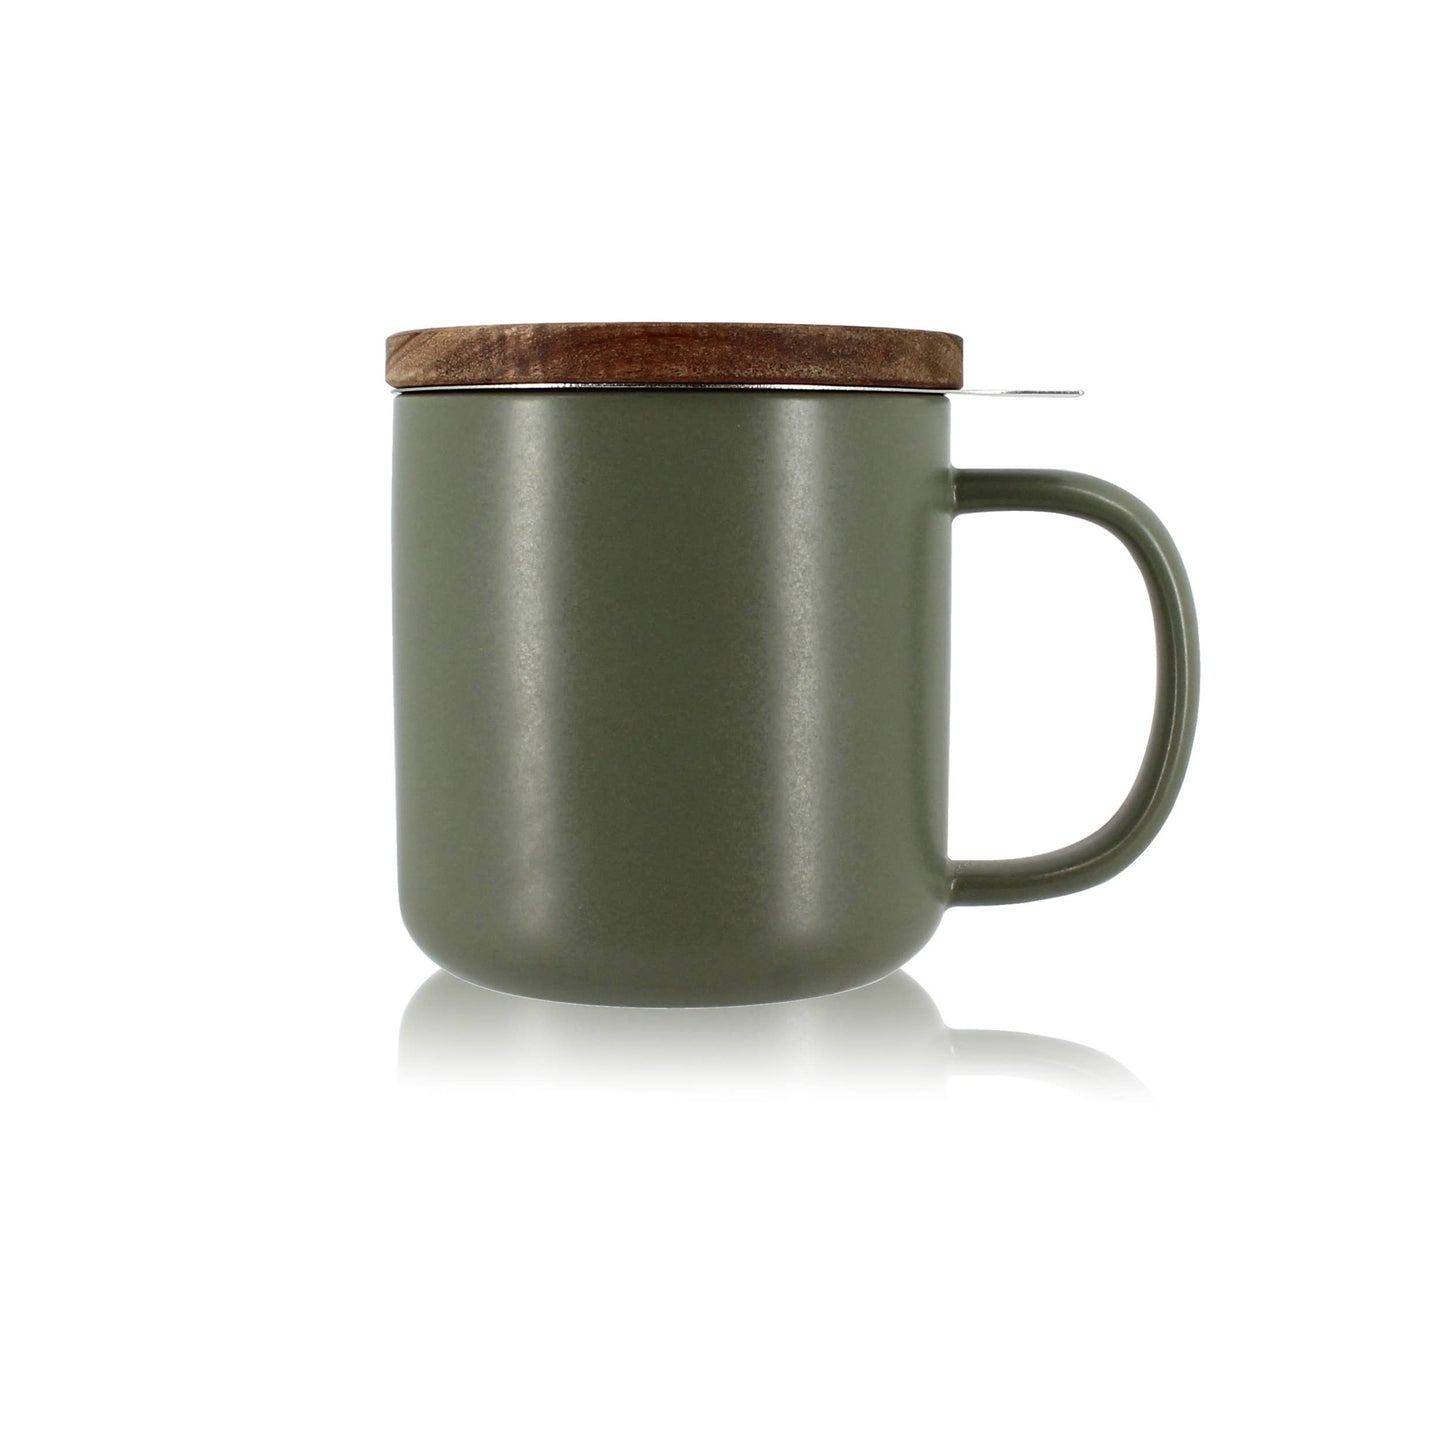 Khaki stoneware tea pot